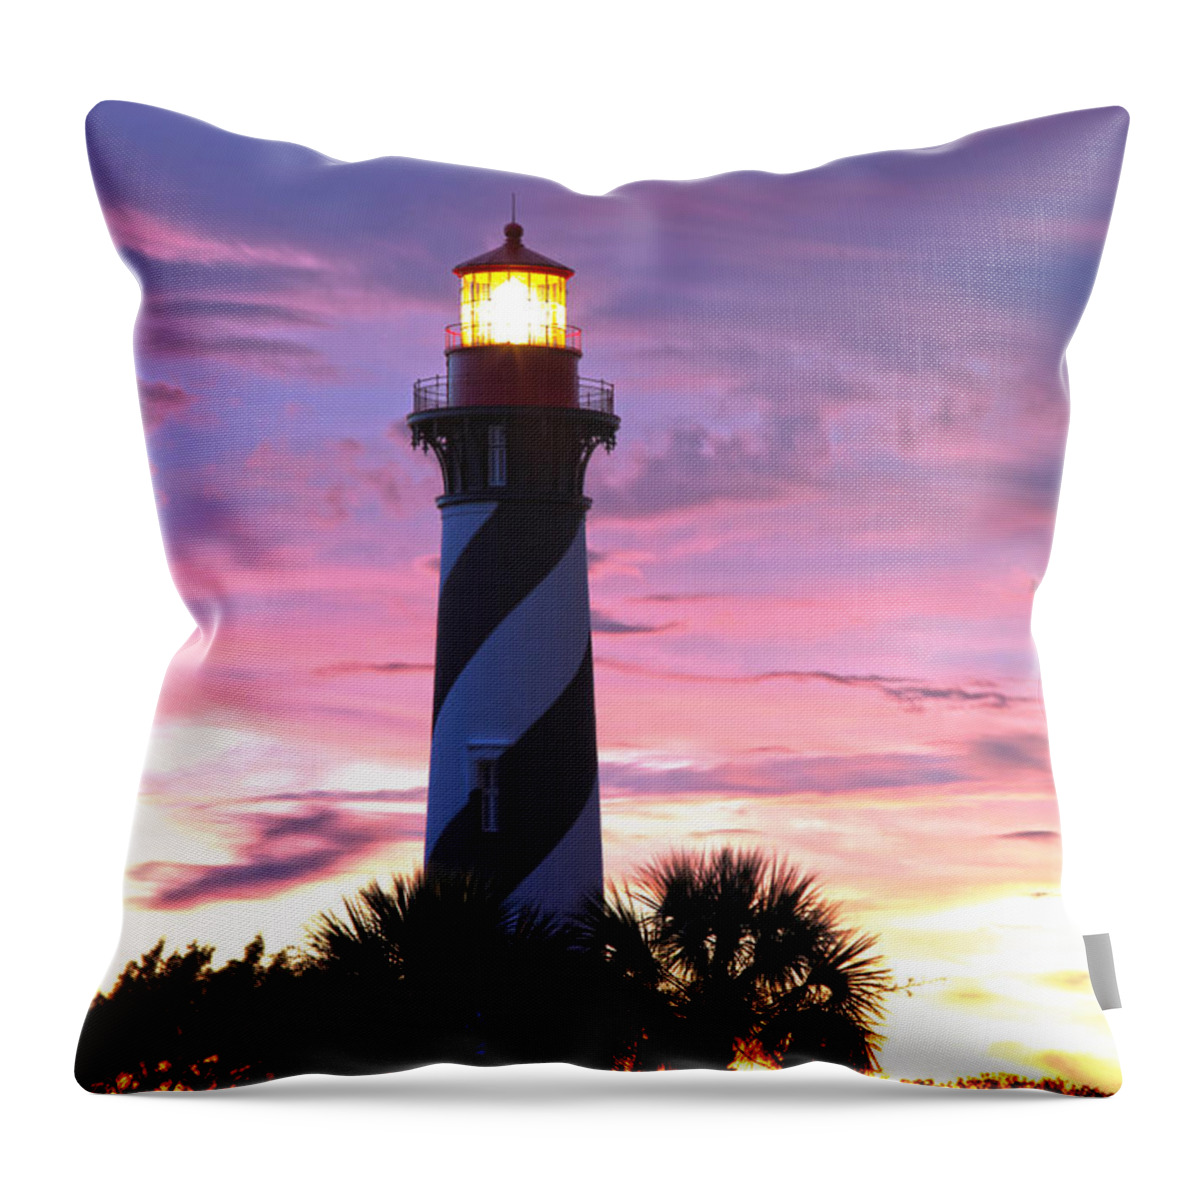 Lighthouse Throw Pillow featuring the photograph St. Augustine Light by Robert Och